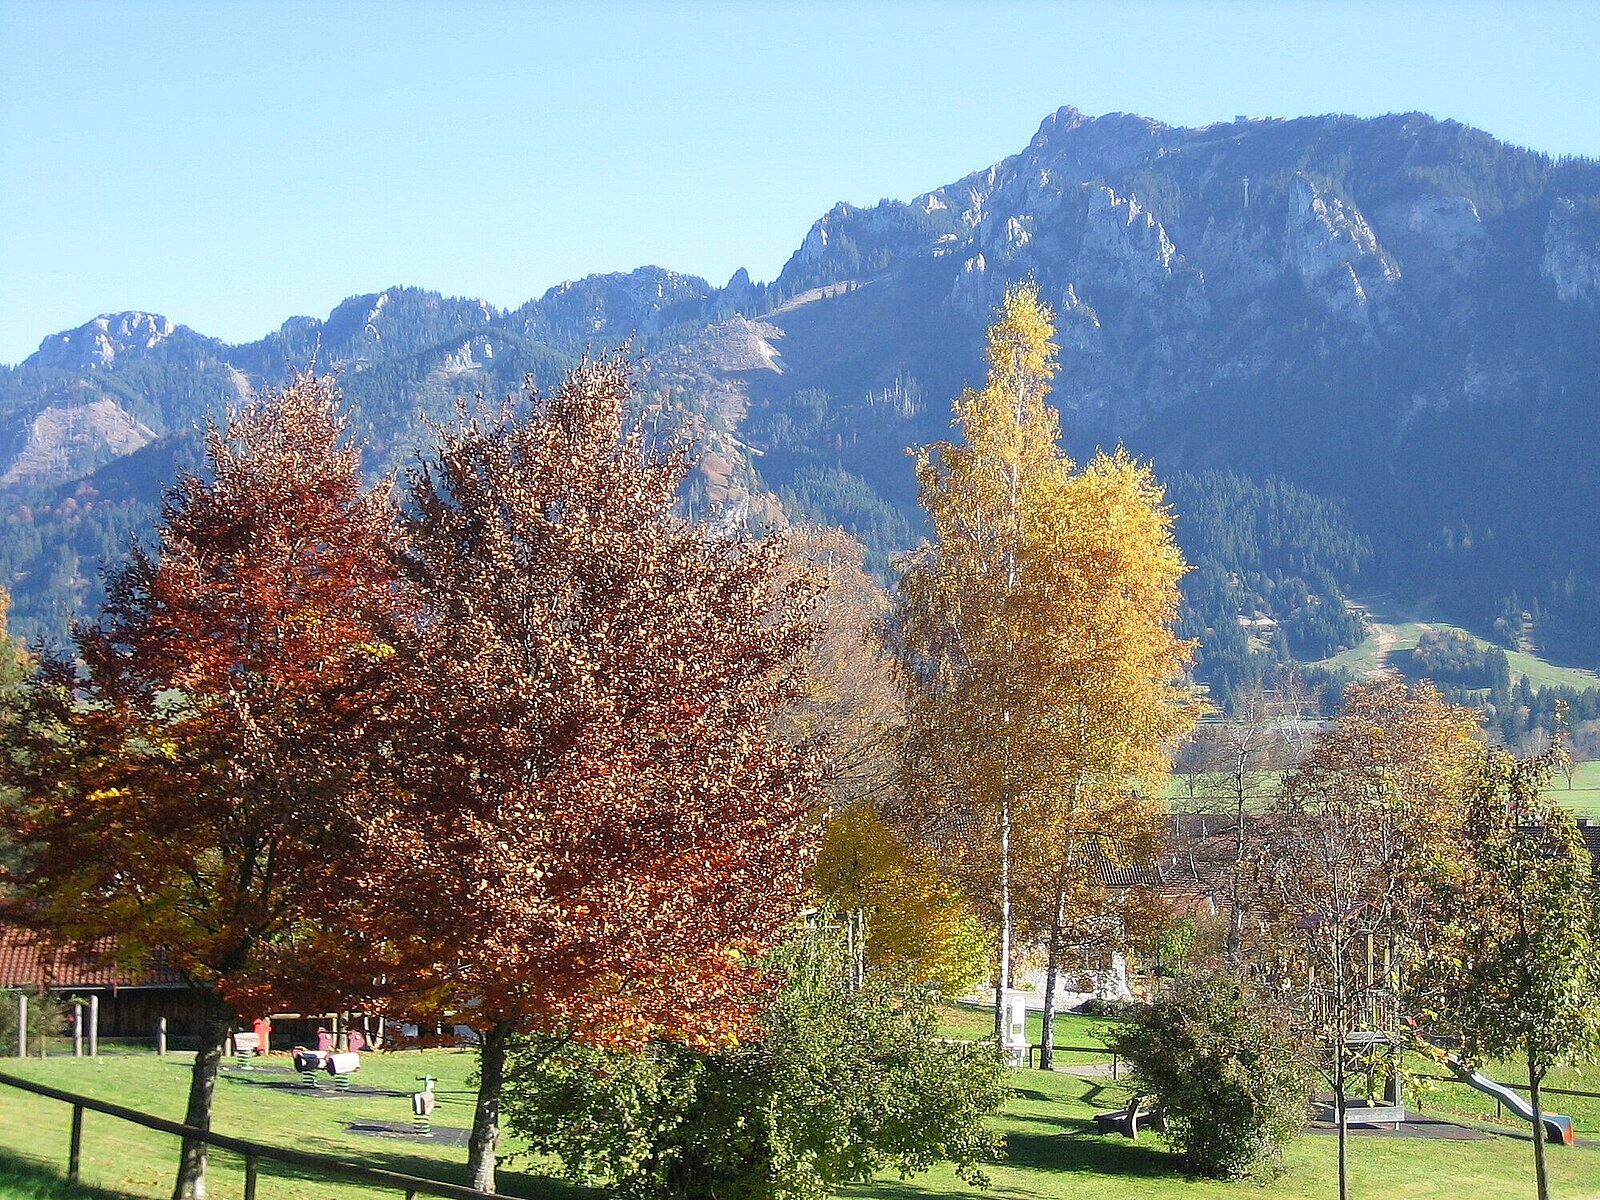 The Kurpark in Autumn